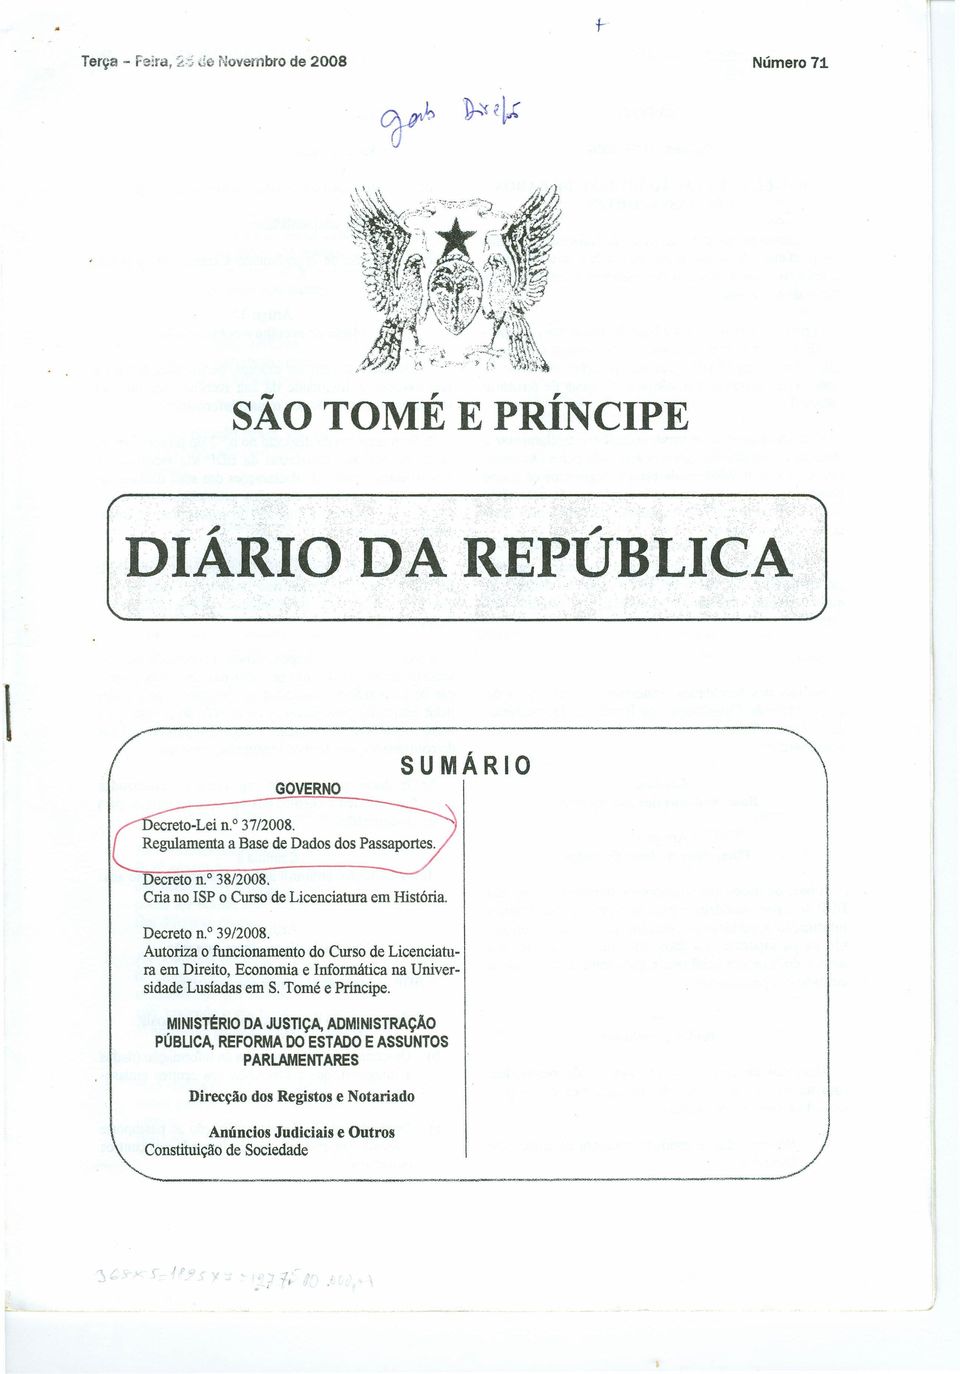 Autoriza o funcionamento do Curso de Licenciatura em Direito, Economia e Informática na Universidade Lusíadas em S. Tomé e Príncipe.